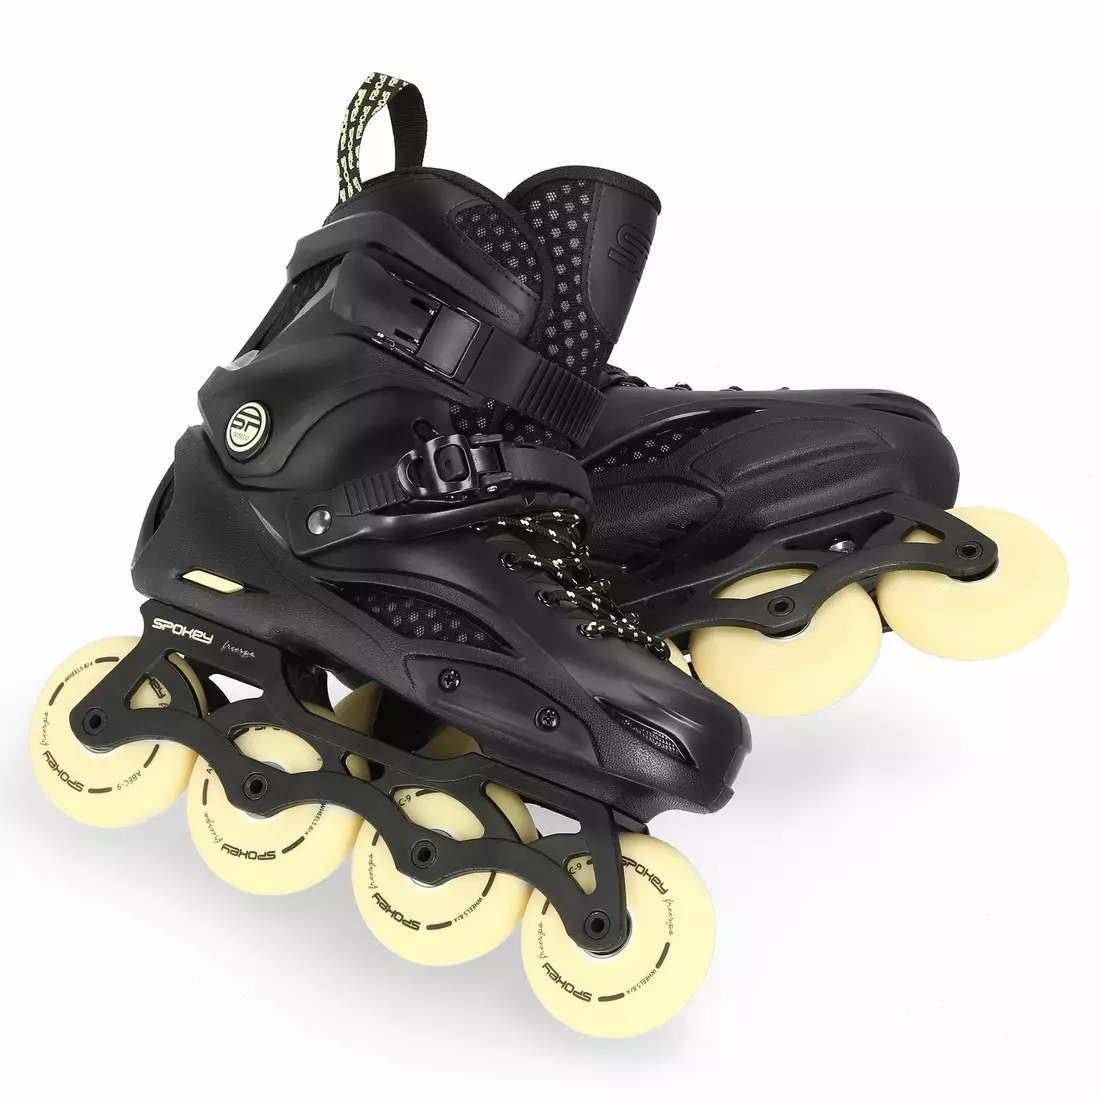 SPOKEY FREESPO inline skates, black